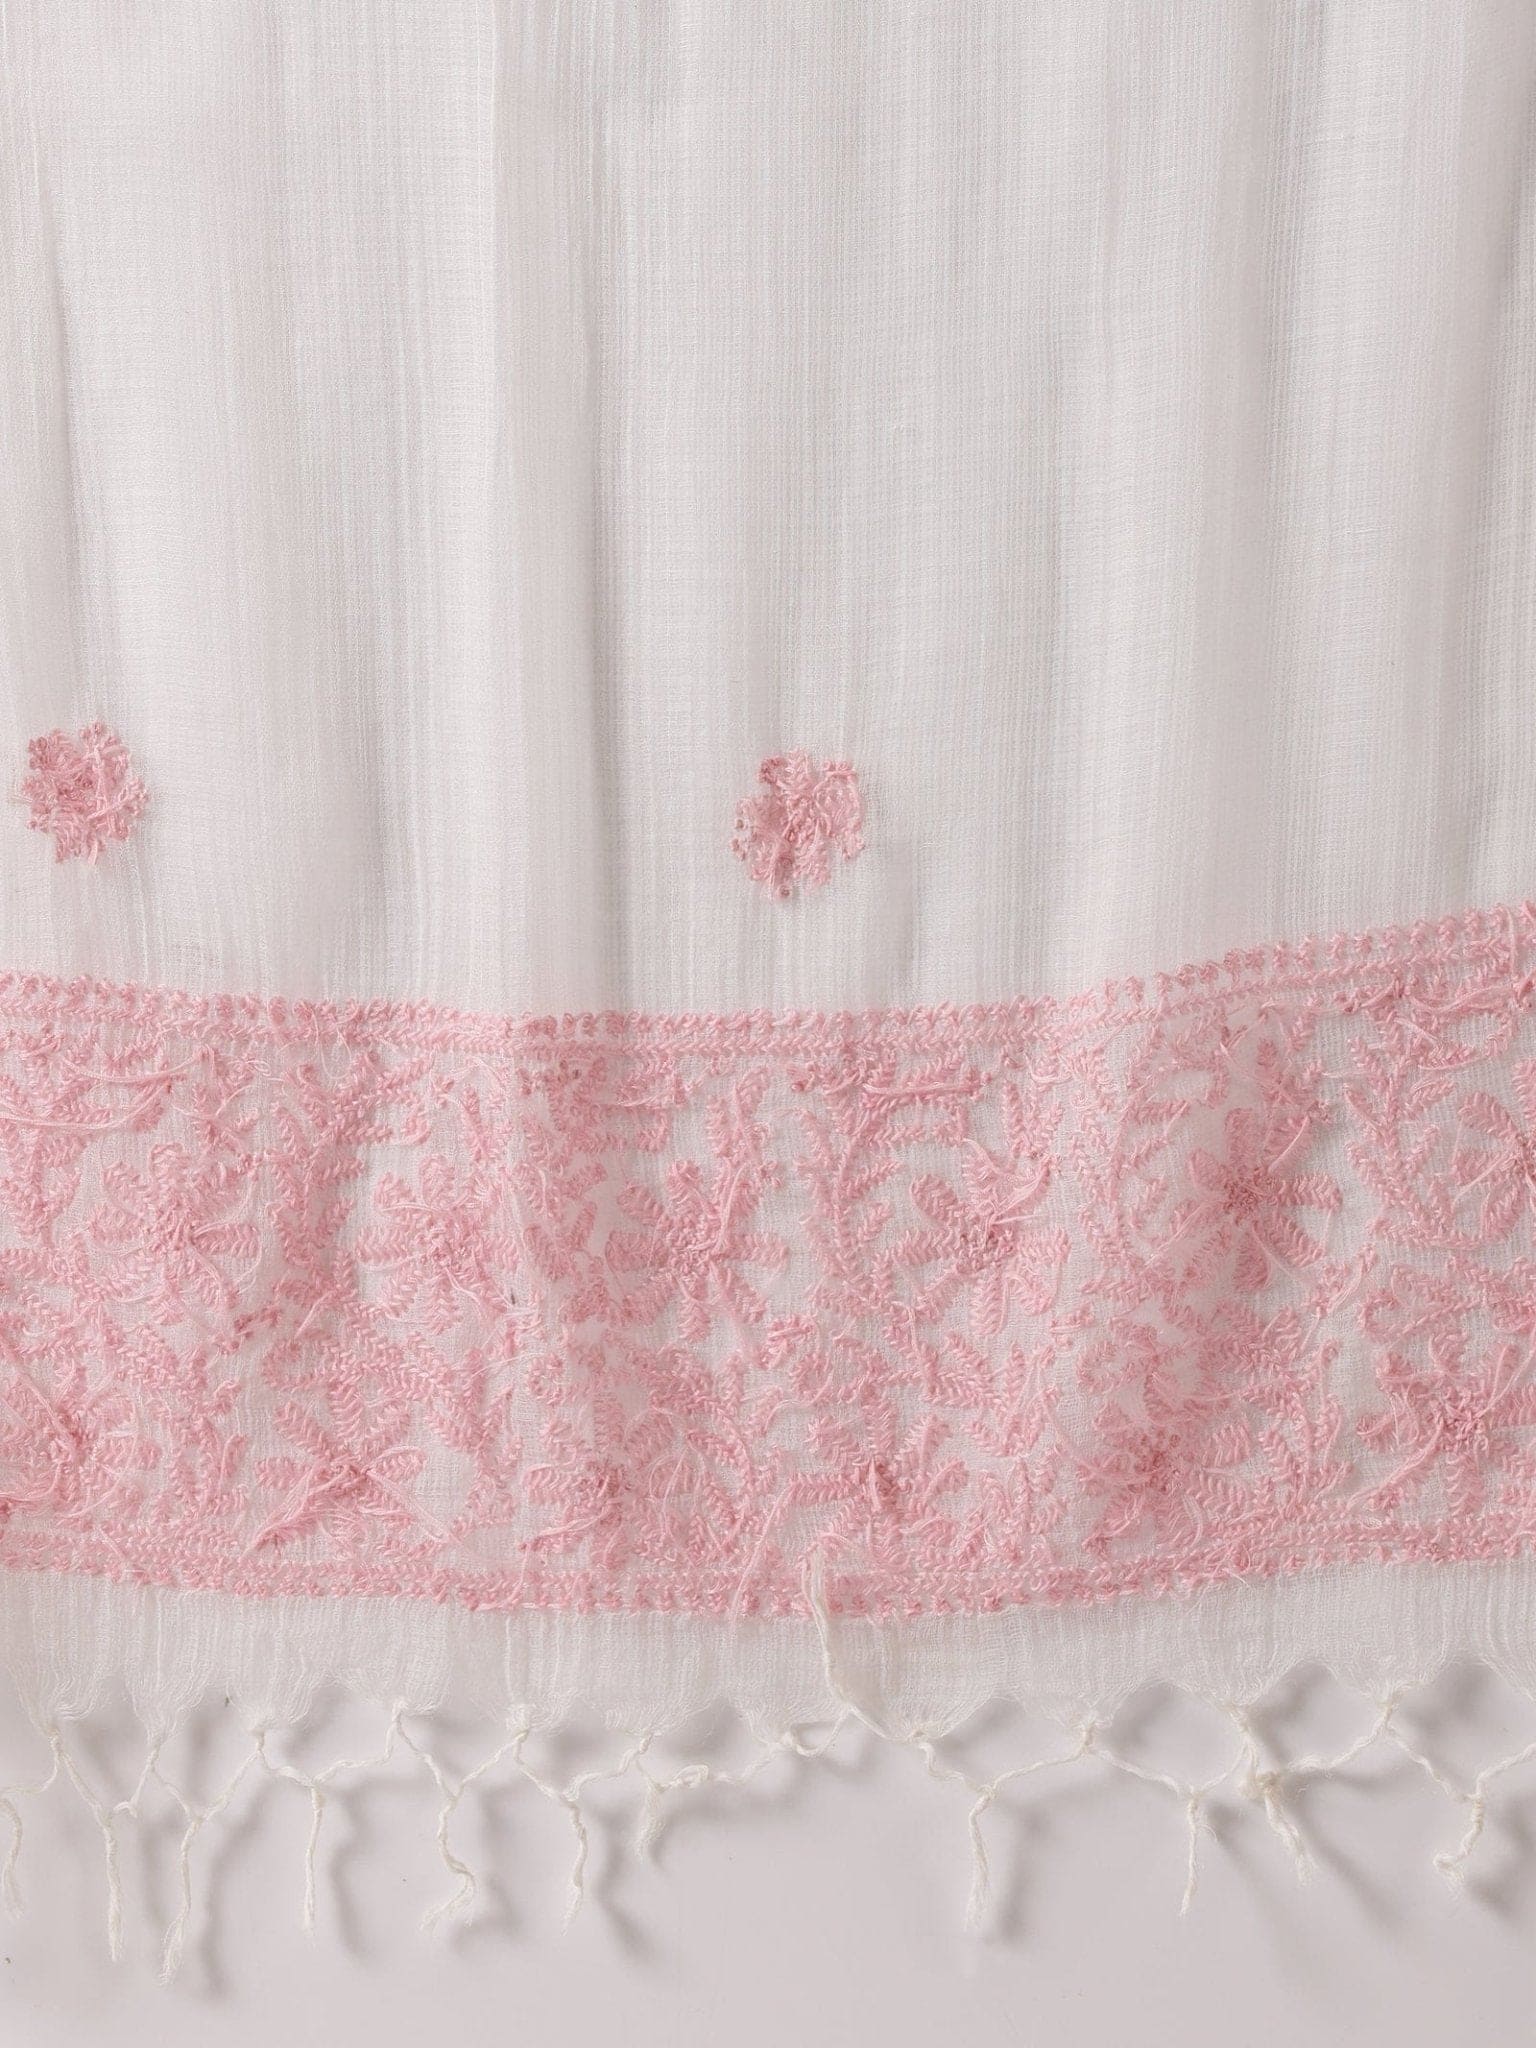 White-Pink Embroidered Kurta Set - Charkha TalesWhite-Pink Embroidered Kurta Set